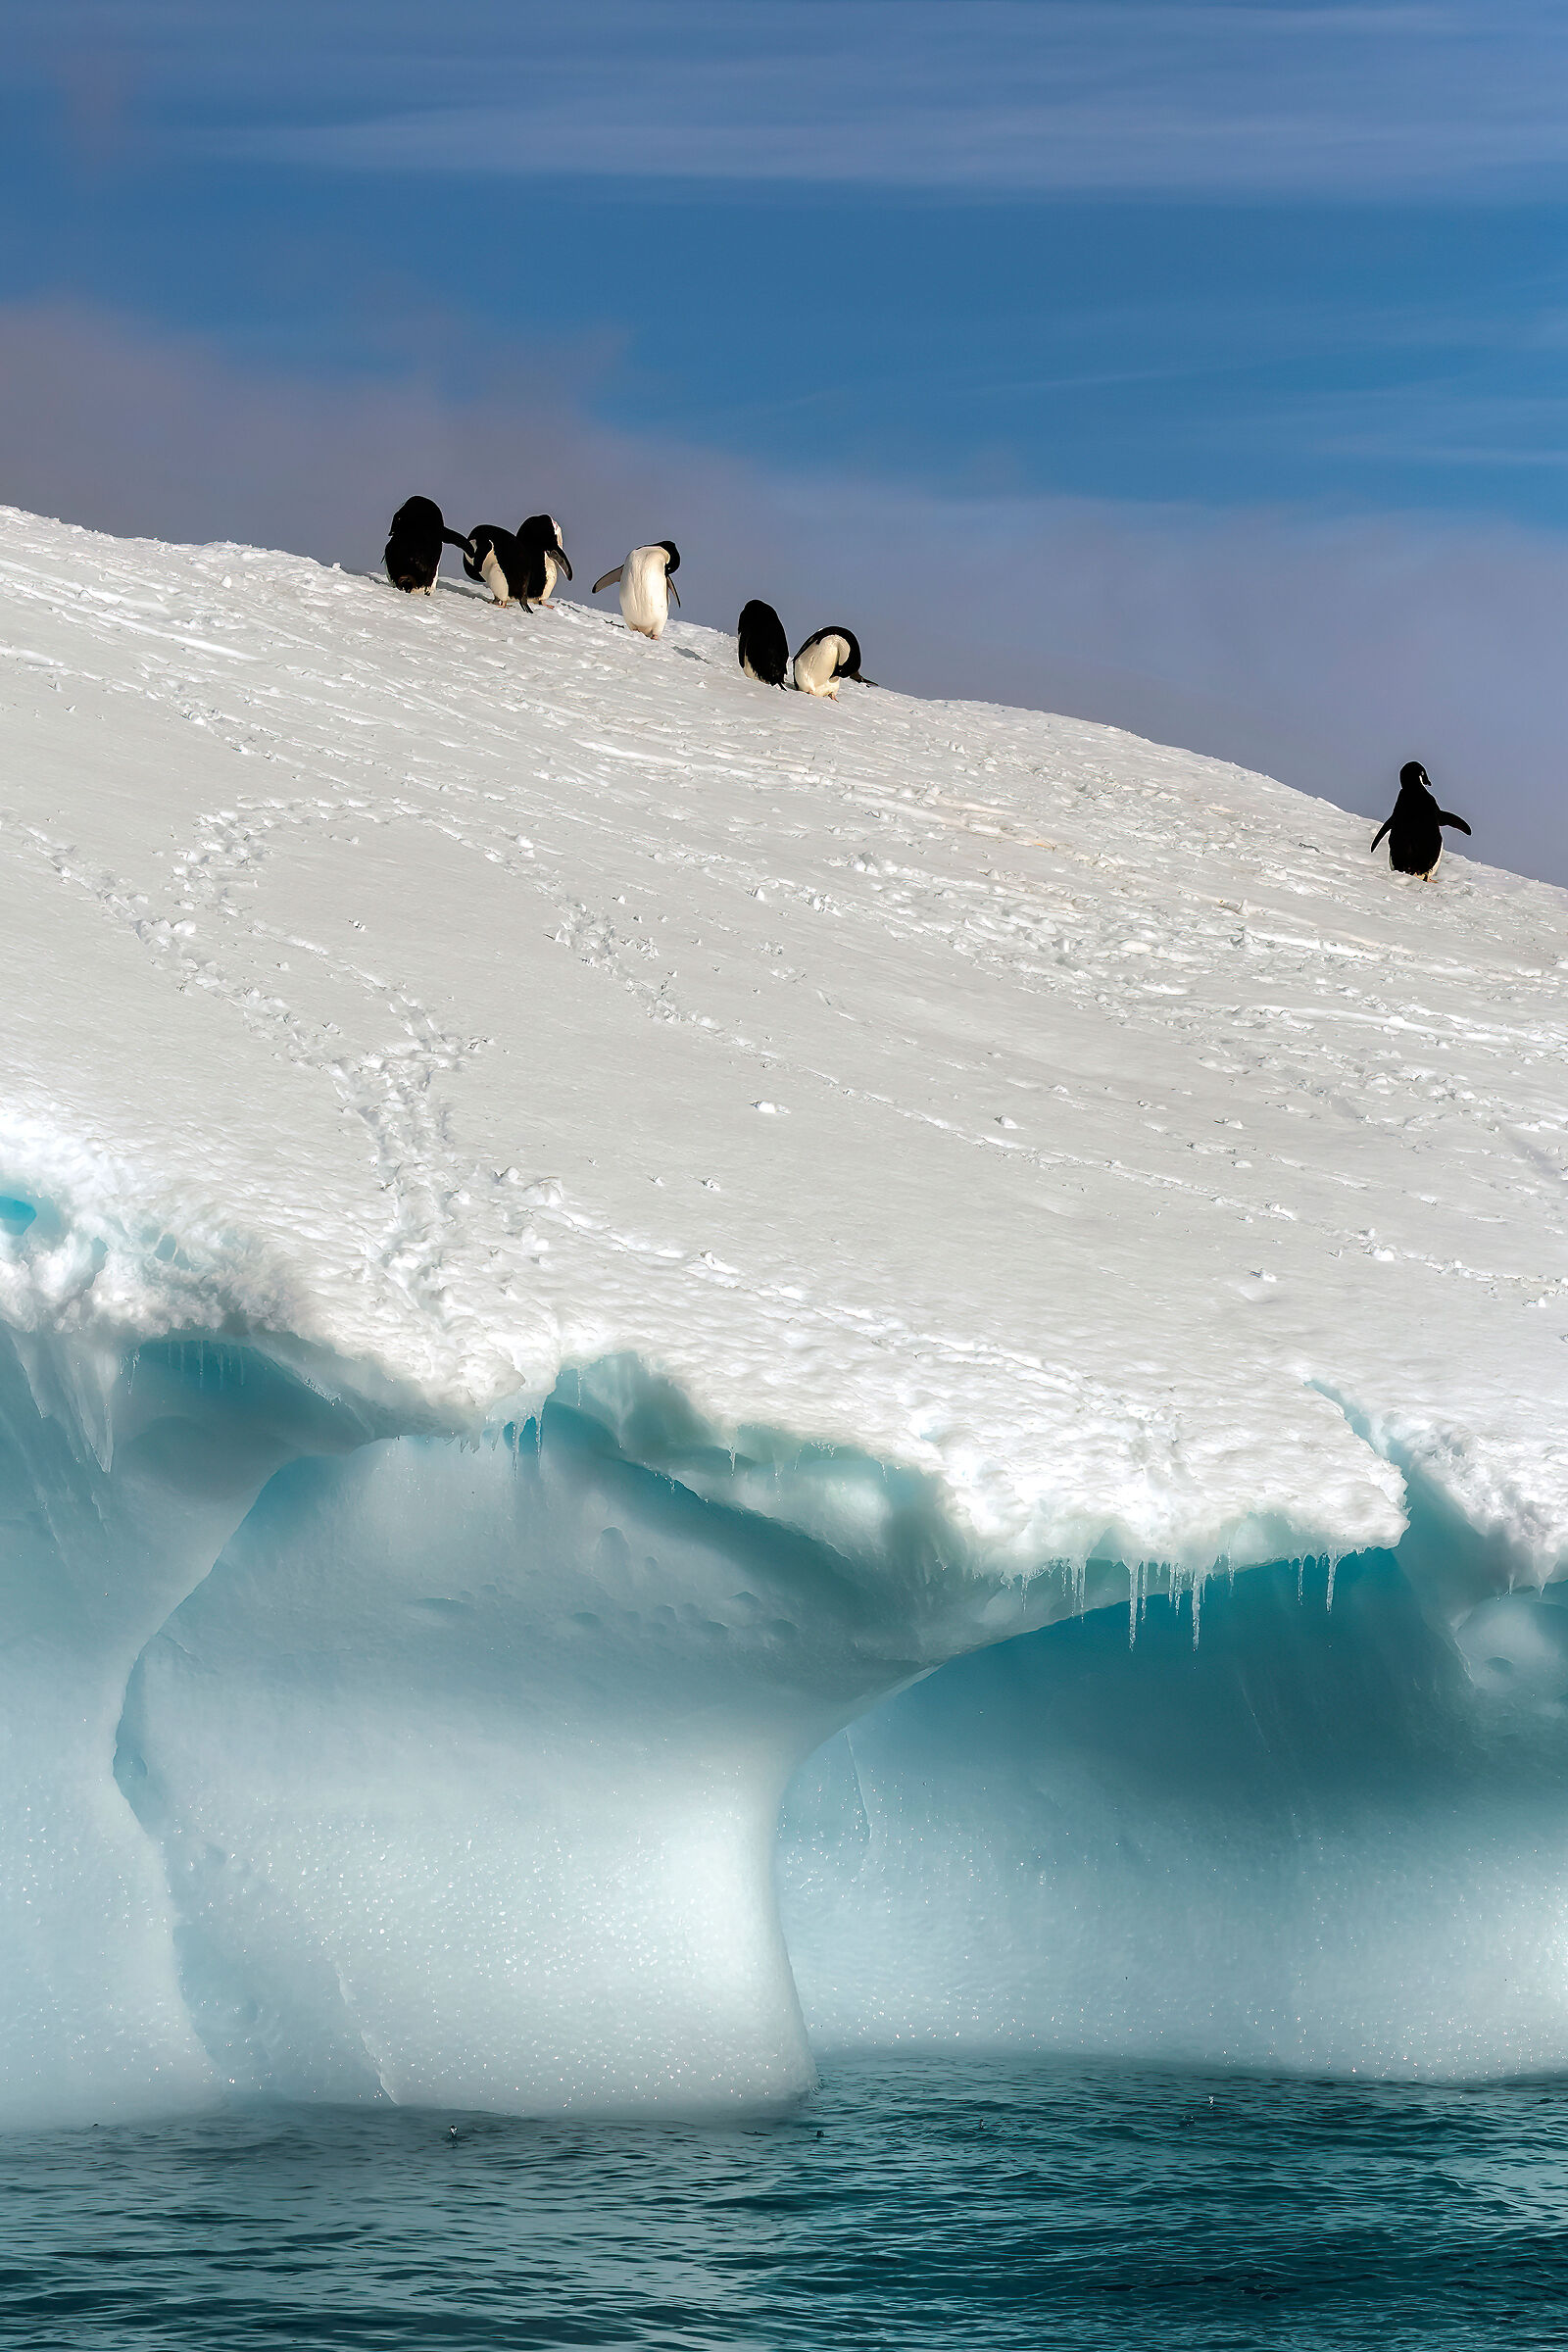 Penguins on icebergs...